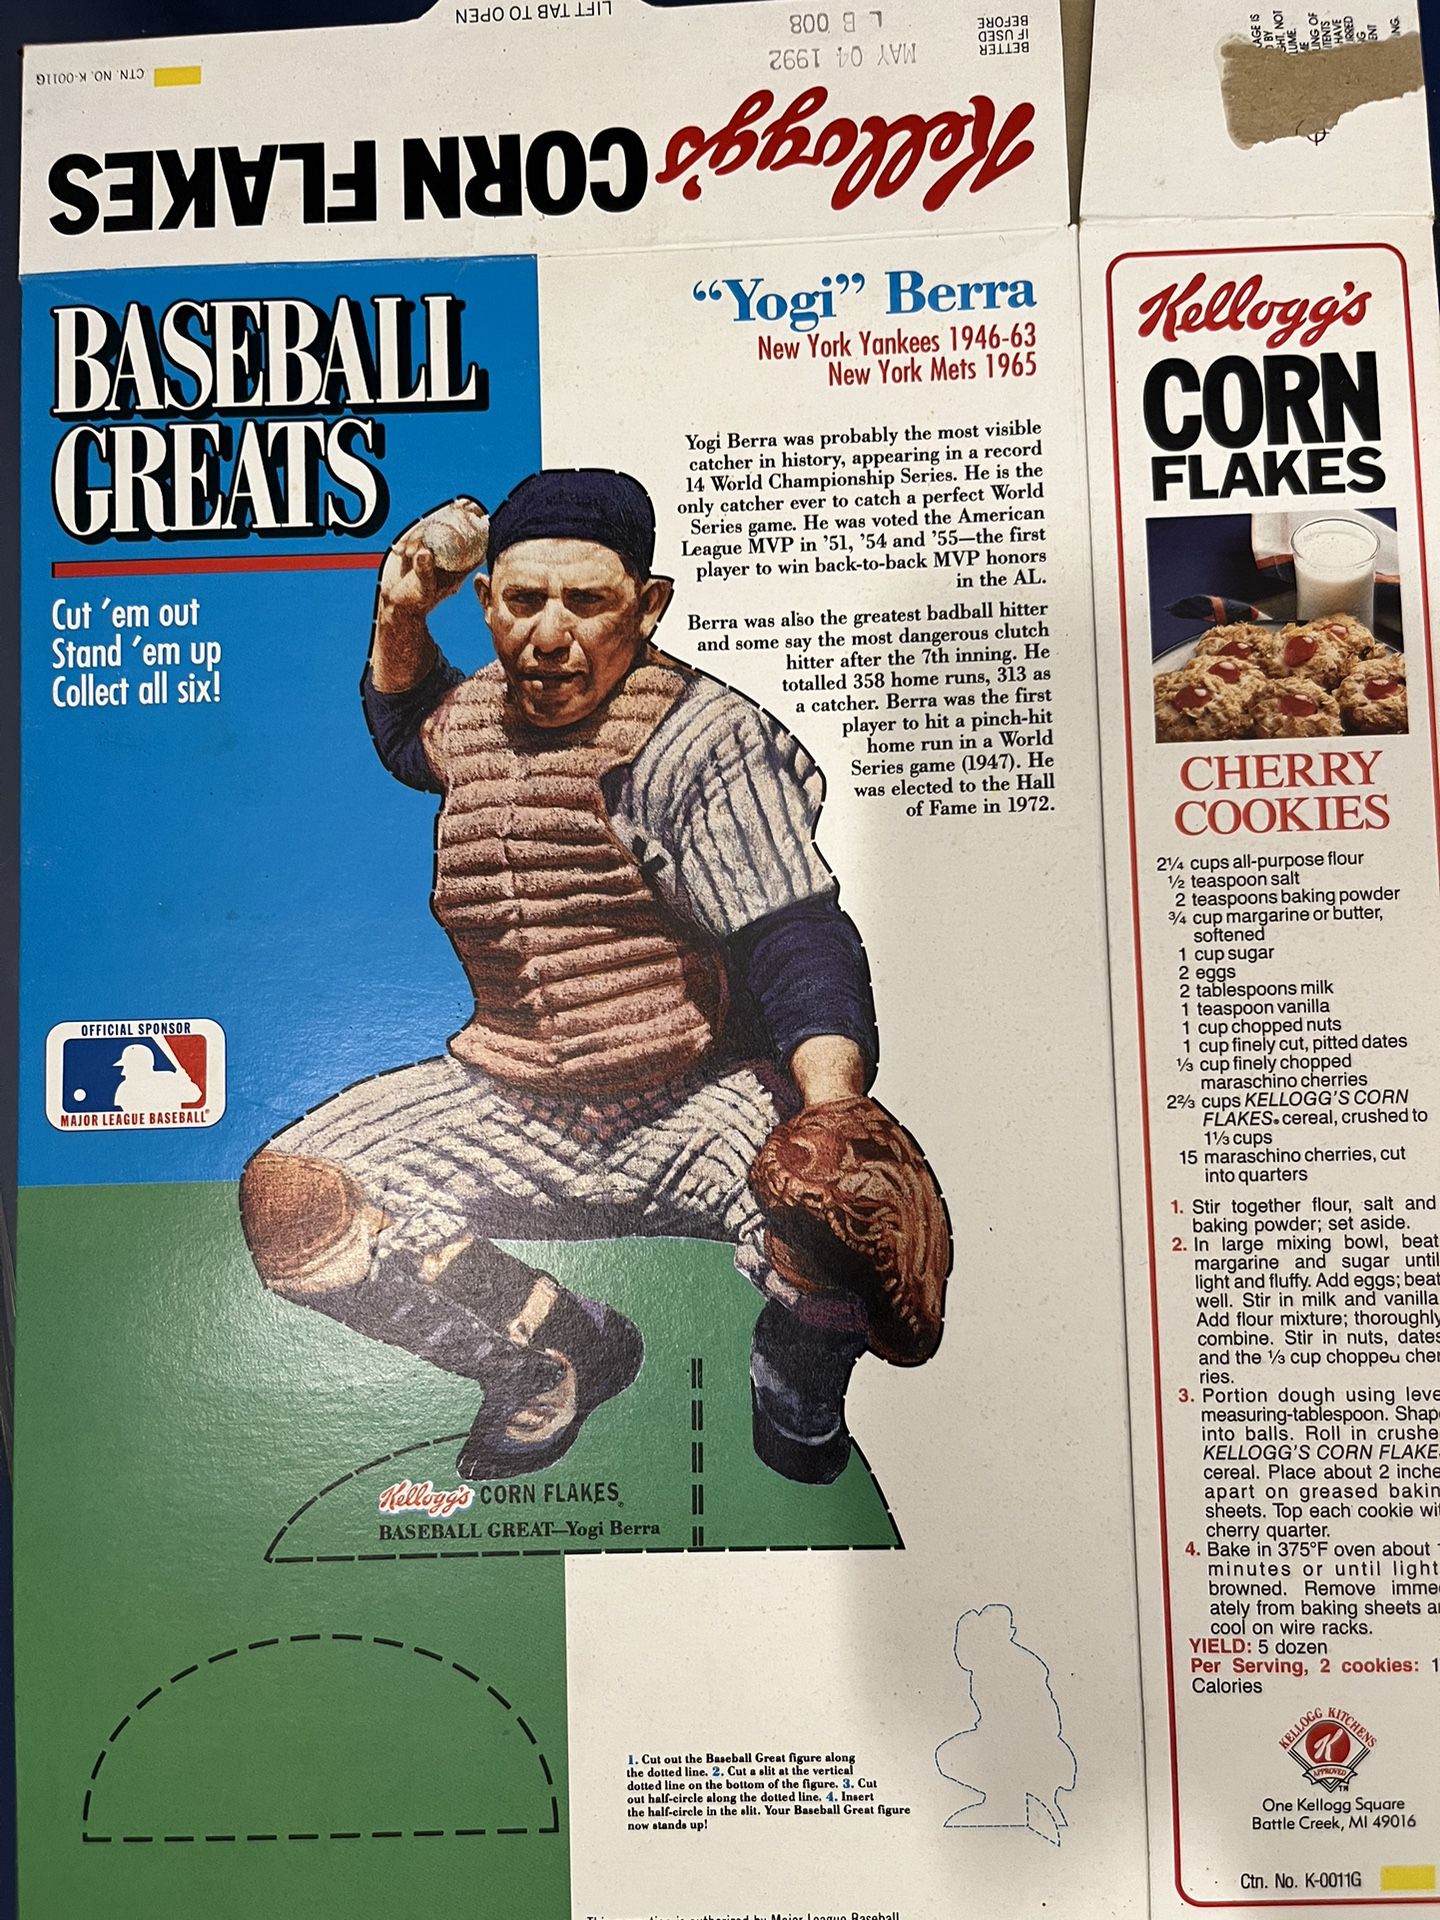 1992 Yogi Bear Cereal Box $30 / Autograph Post Card $150